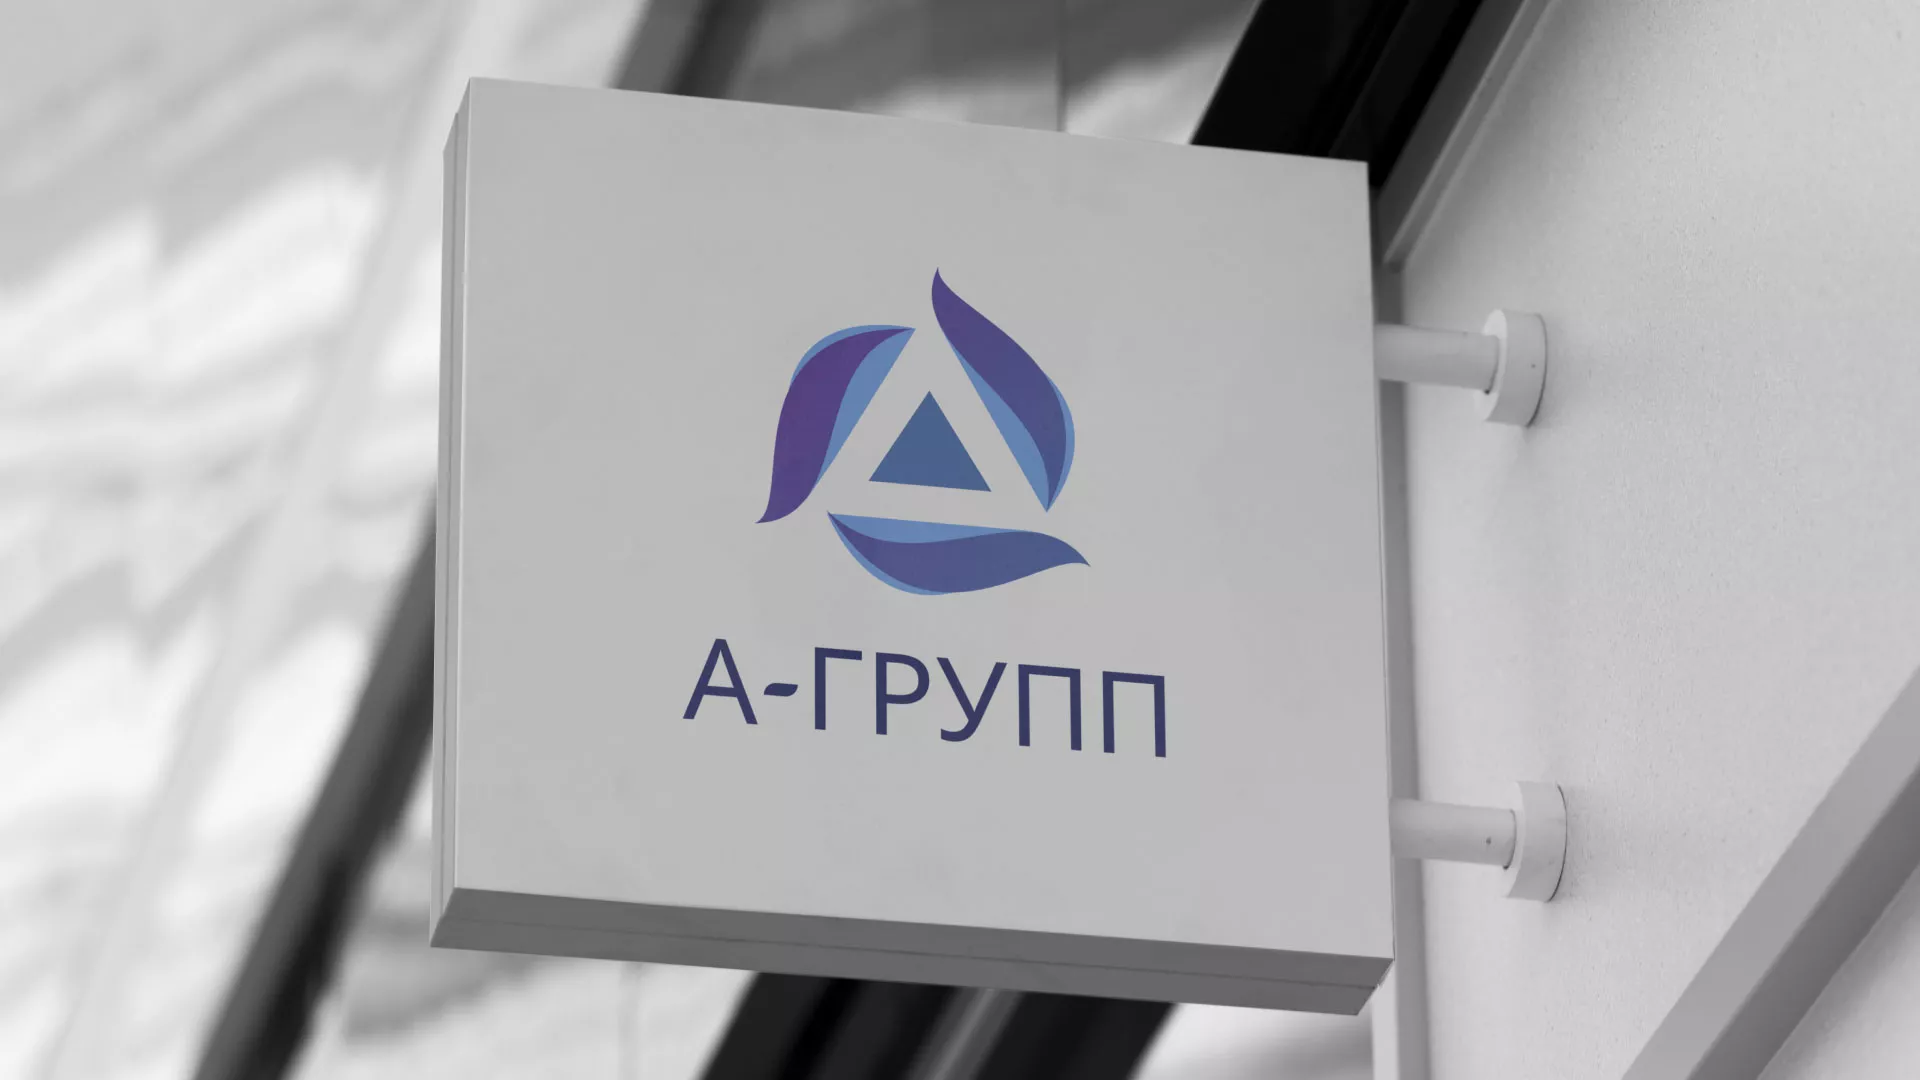 Создание логотипа компании «А-ГРУПП» в Грязовце